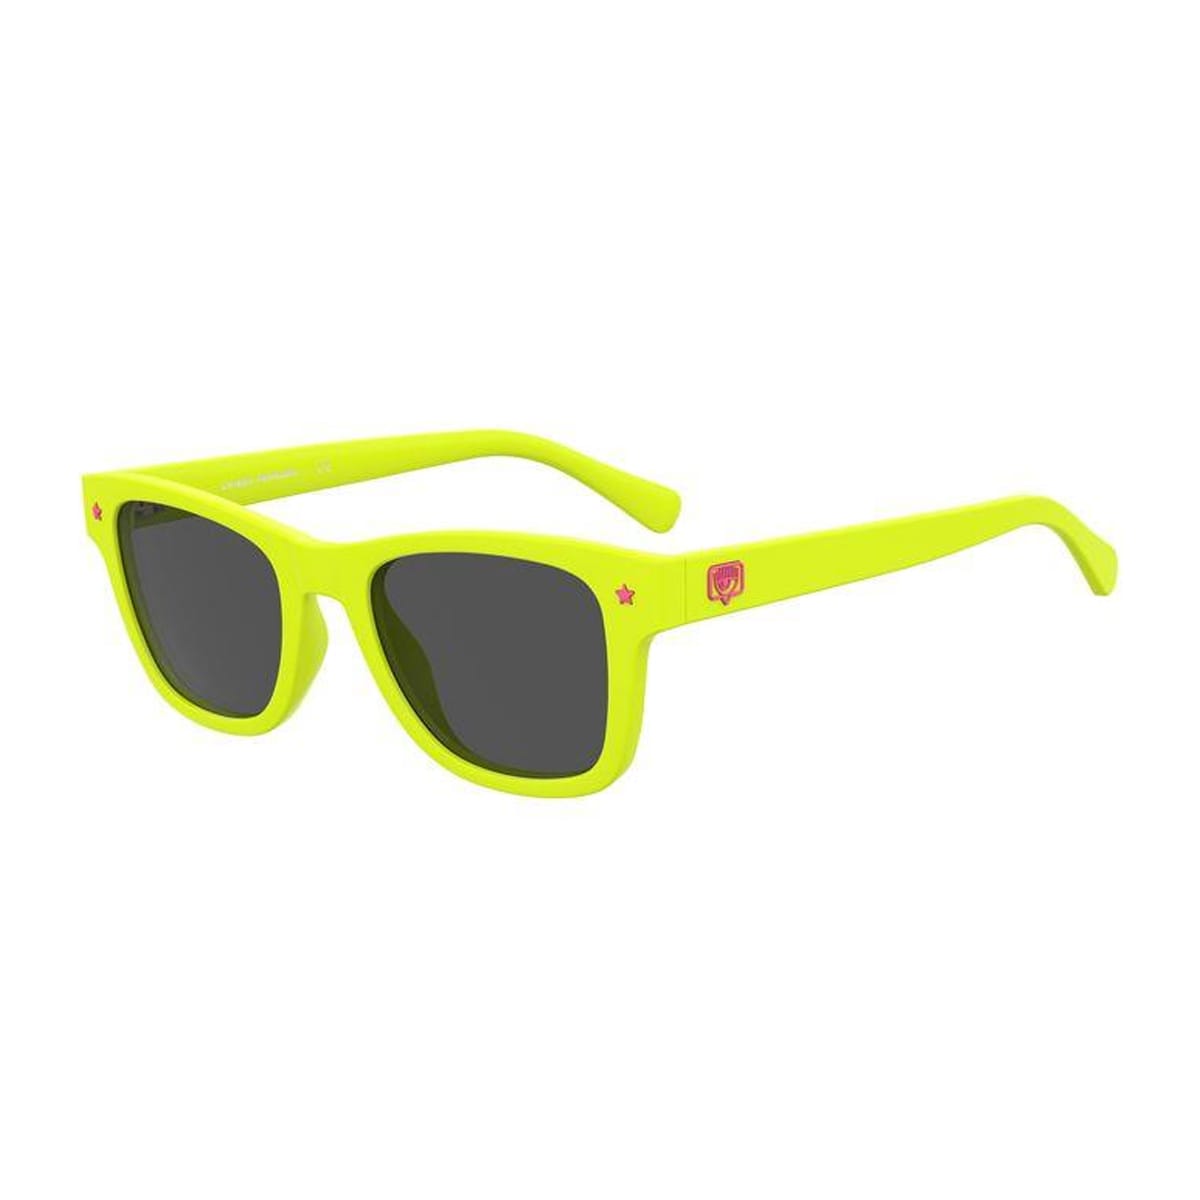 Chiara Ferragni 1006/s Sunglasses In Green